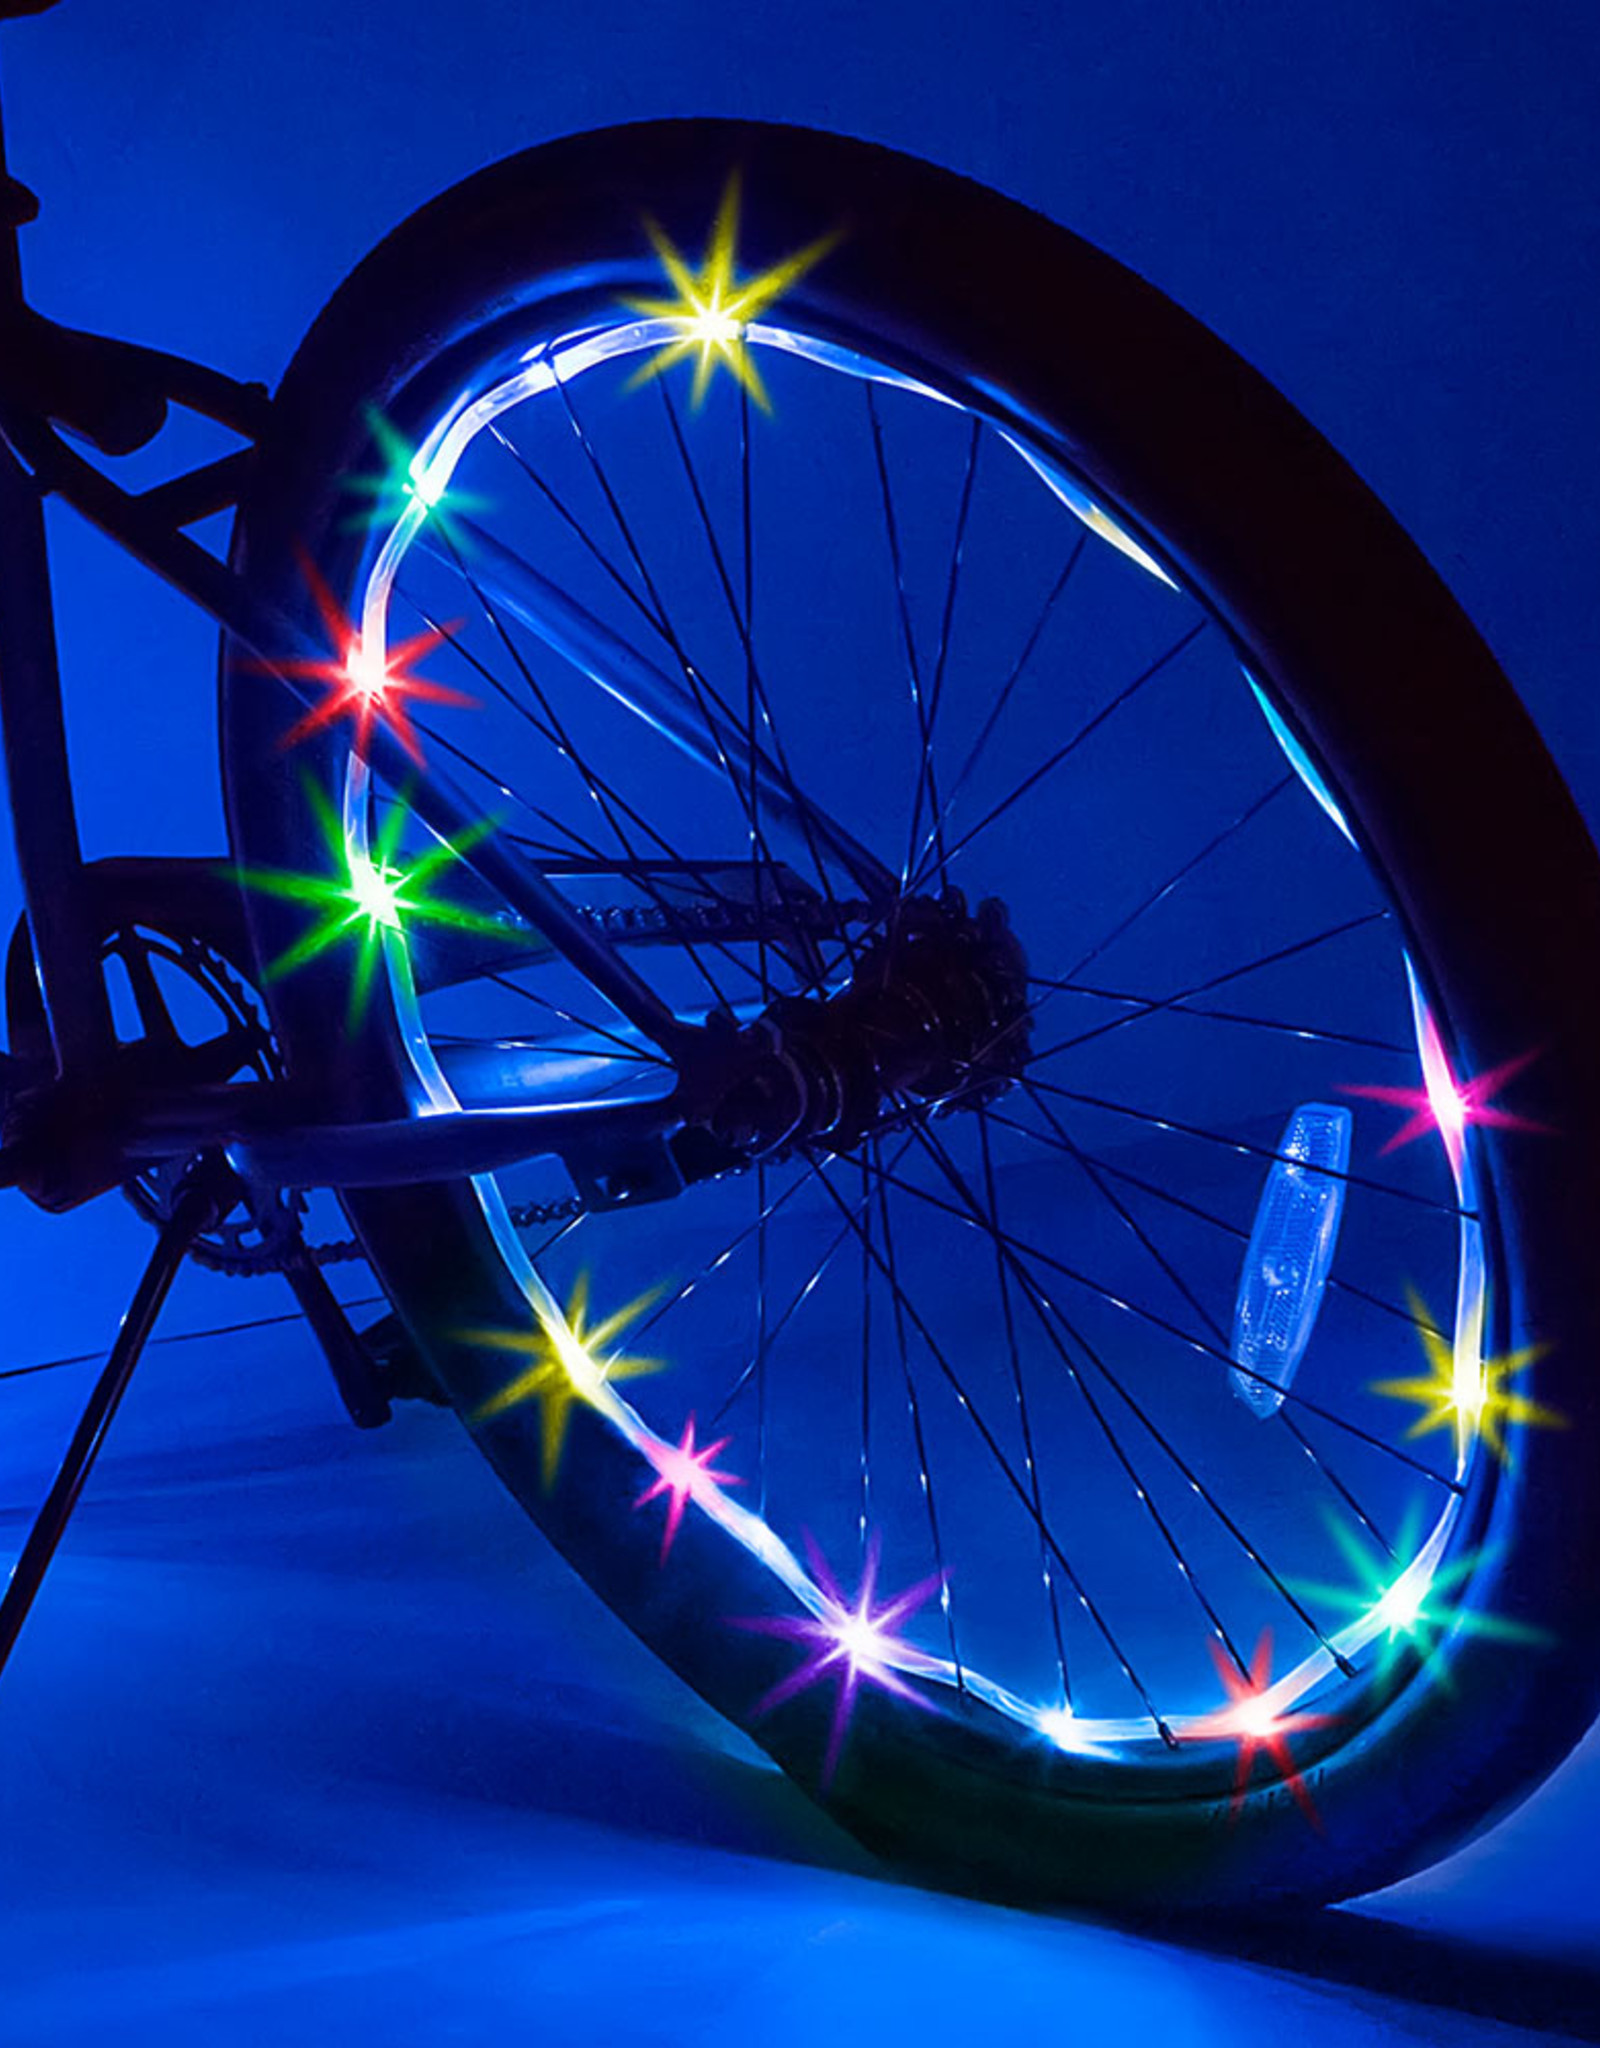 Bike Brightz Wheel Brightz - Razzle Dazzle